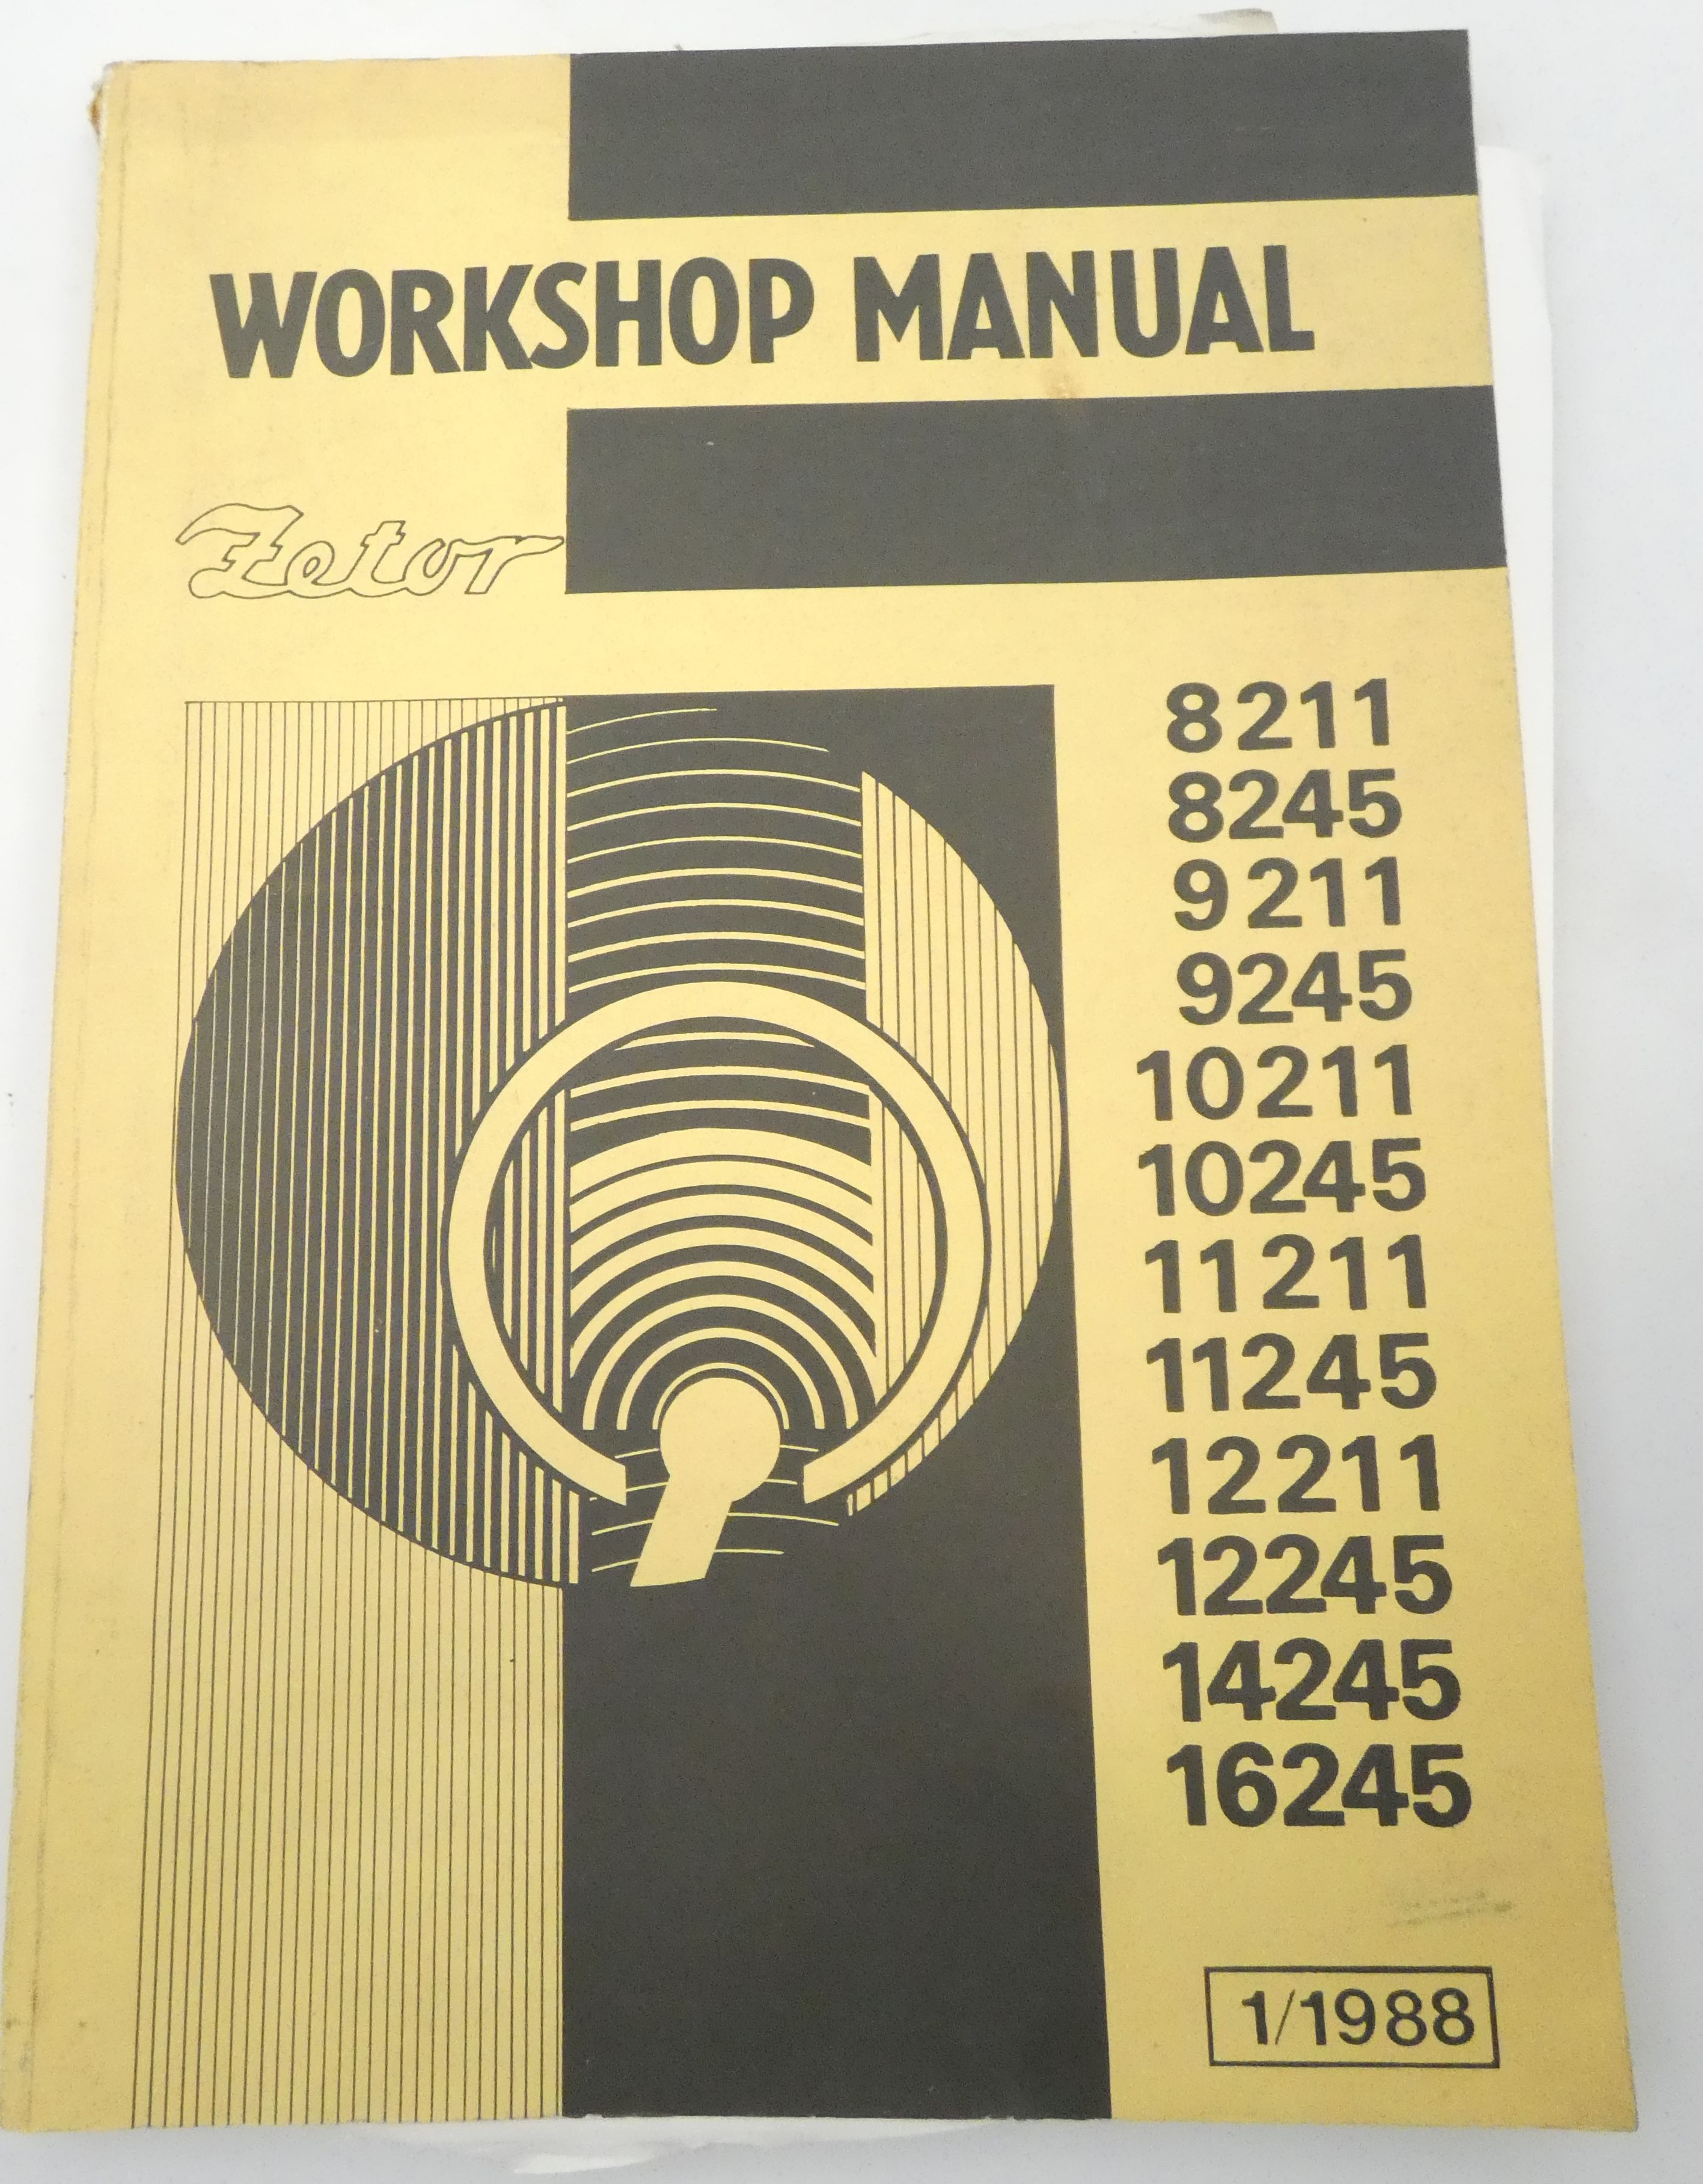 Zetor 8211, 8245, 9211, 9245, 10211, 10245, 11211, 11245, 12211, 12245, 14245, 16245 workshop manual